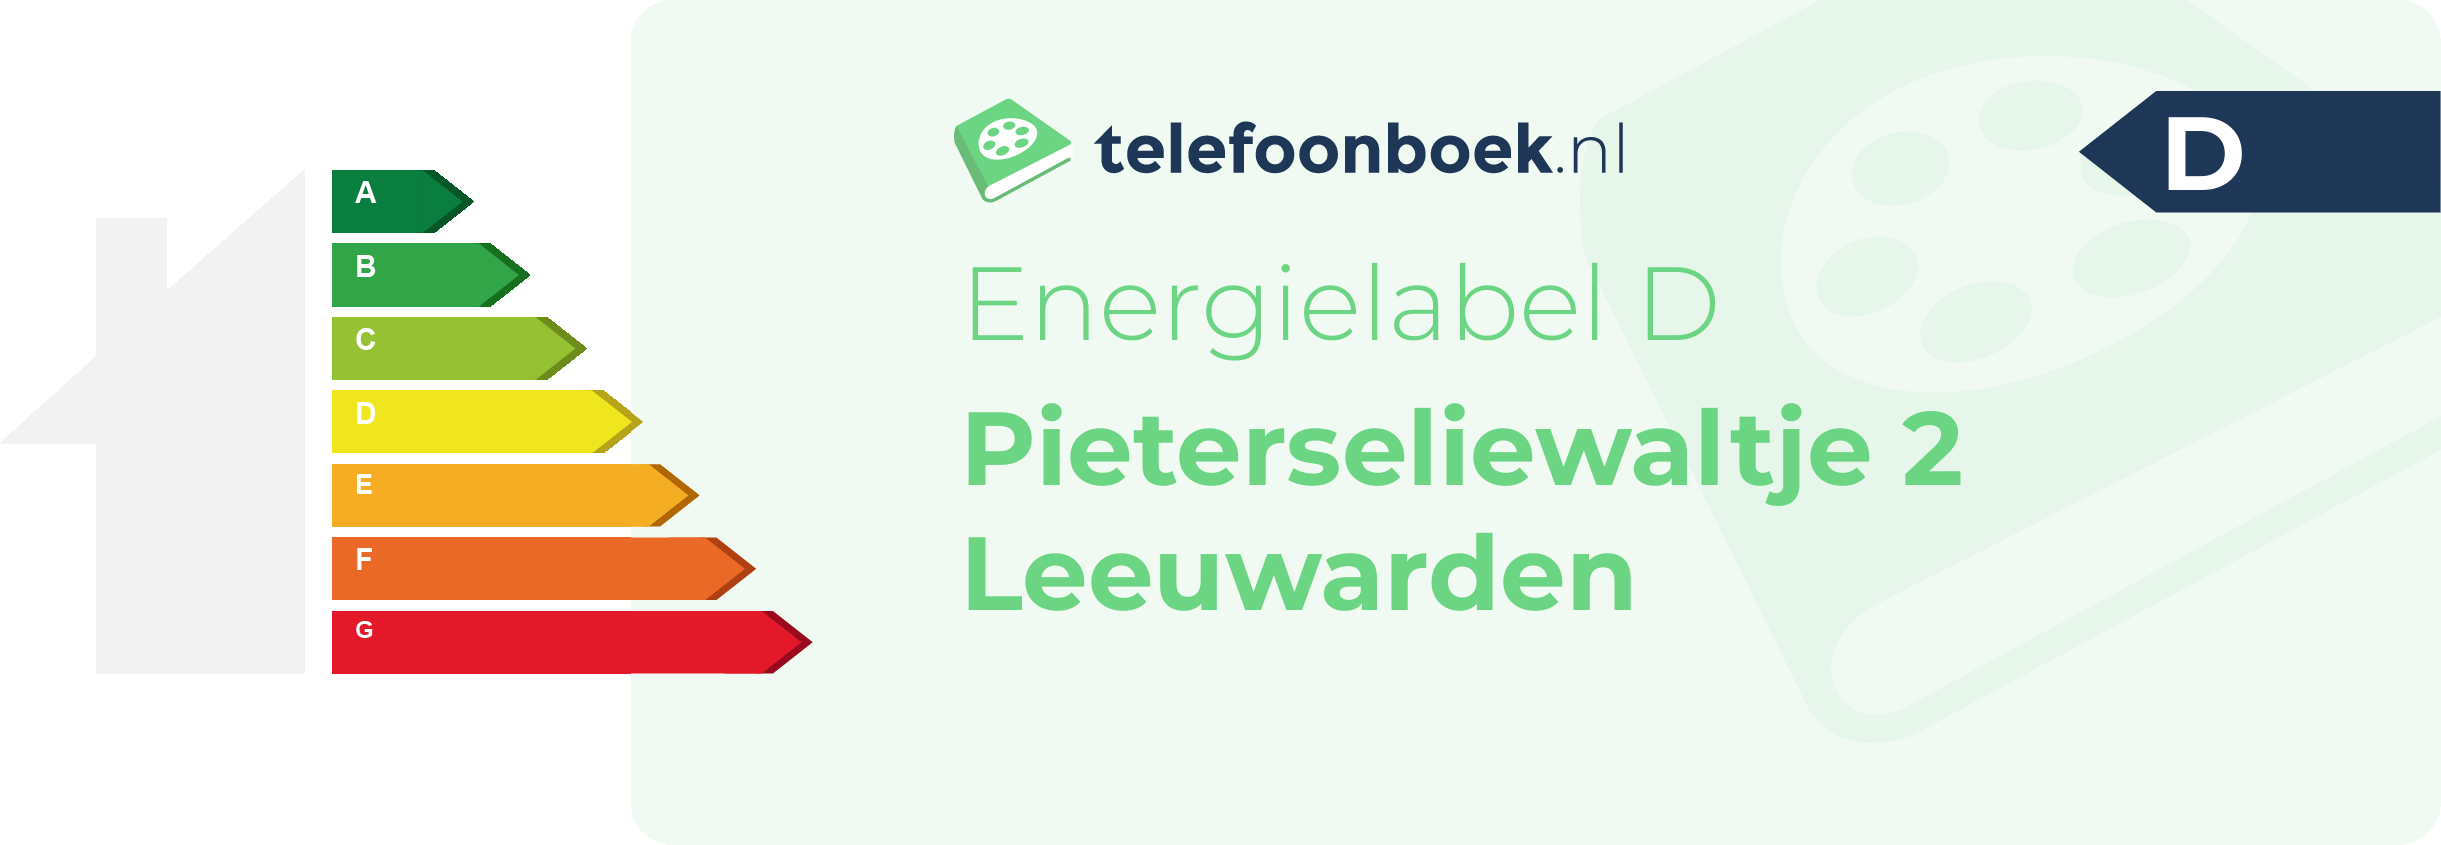 Energielabel Pieterseliewaltje 2 Leeuwarden